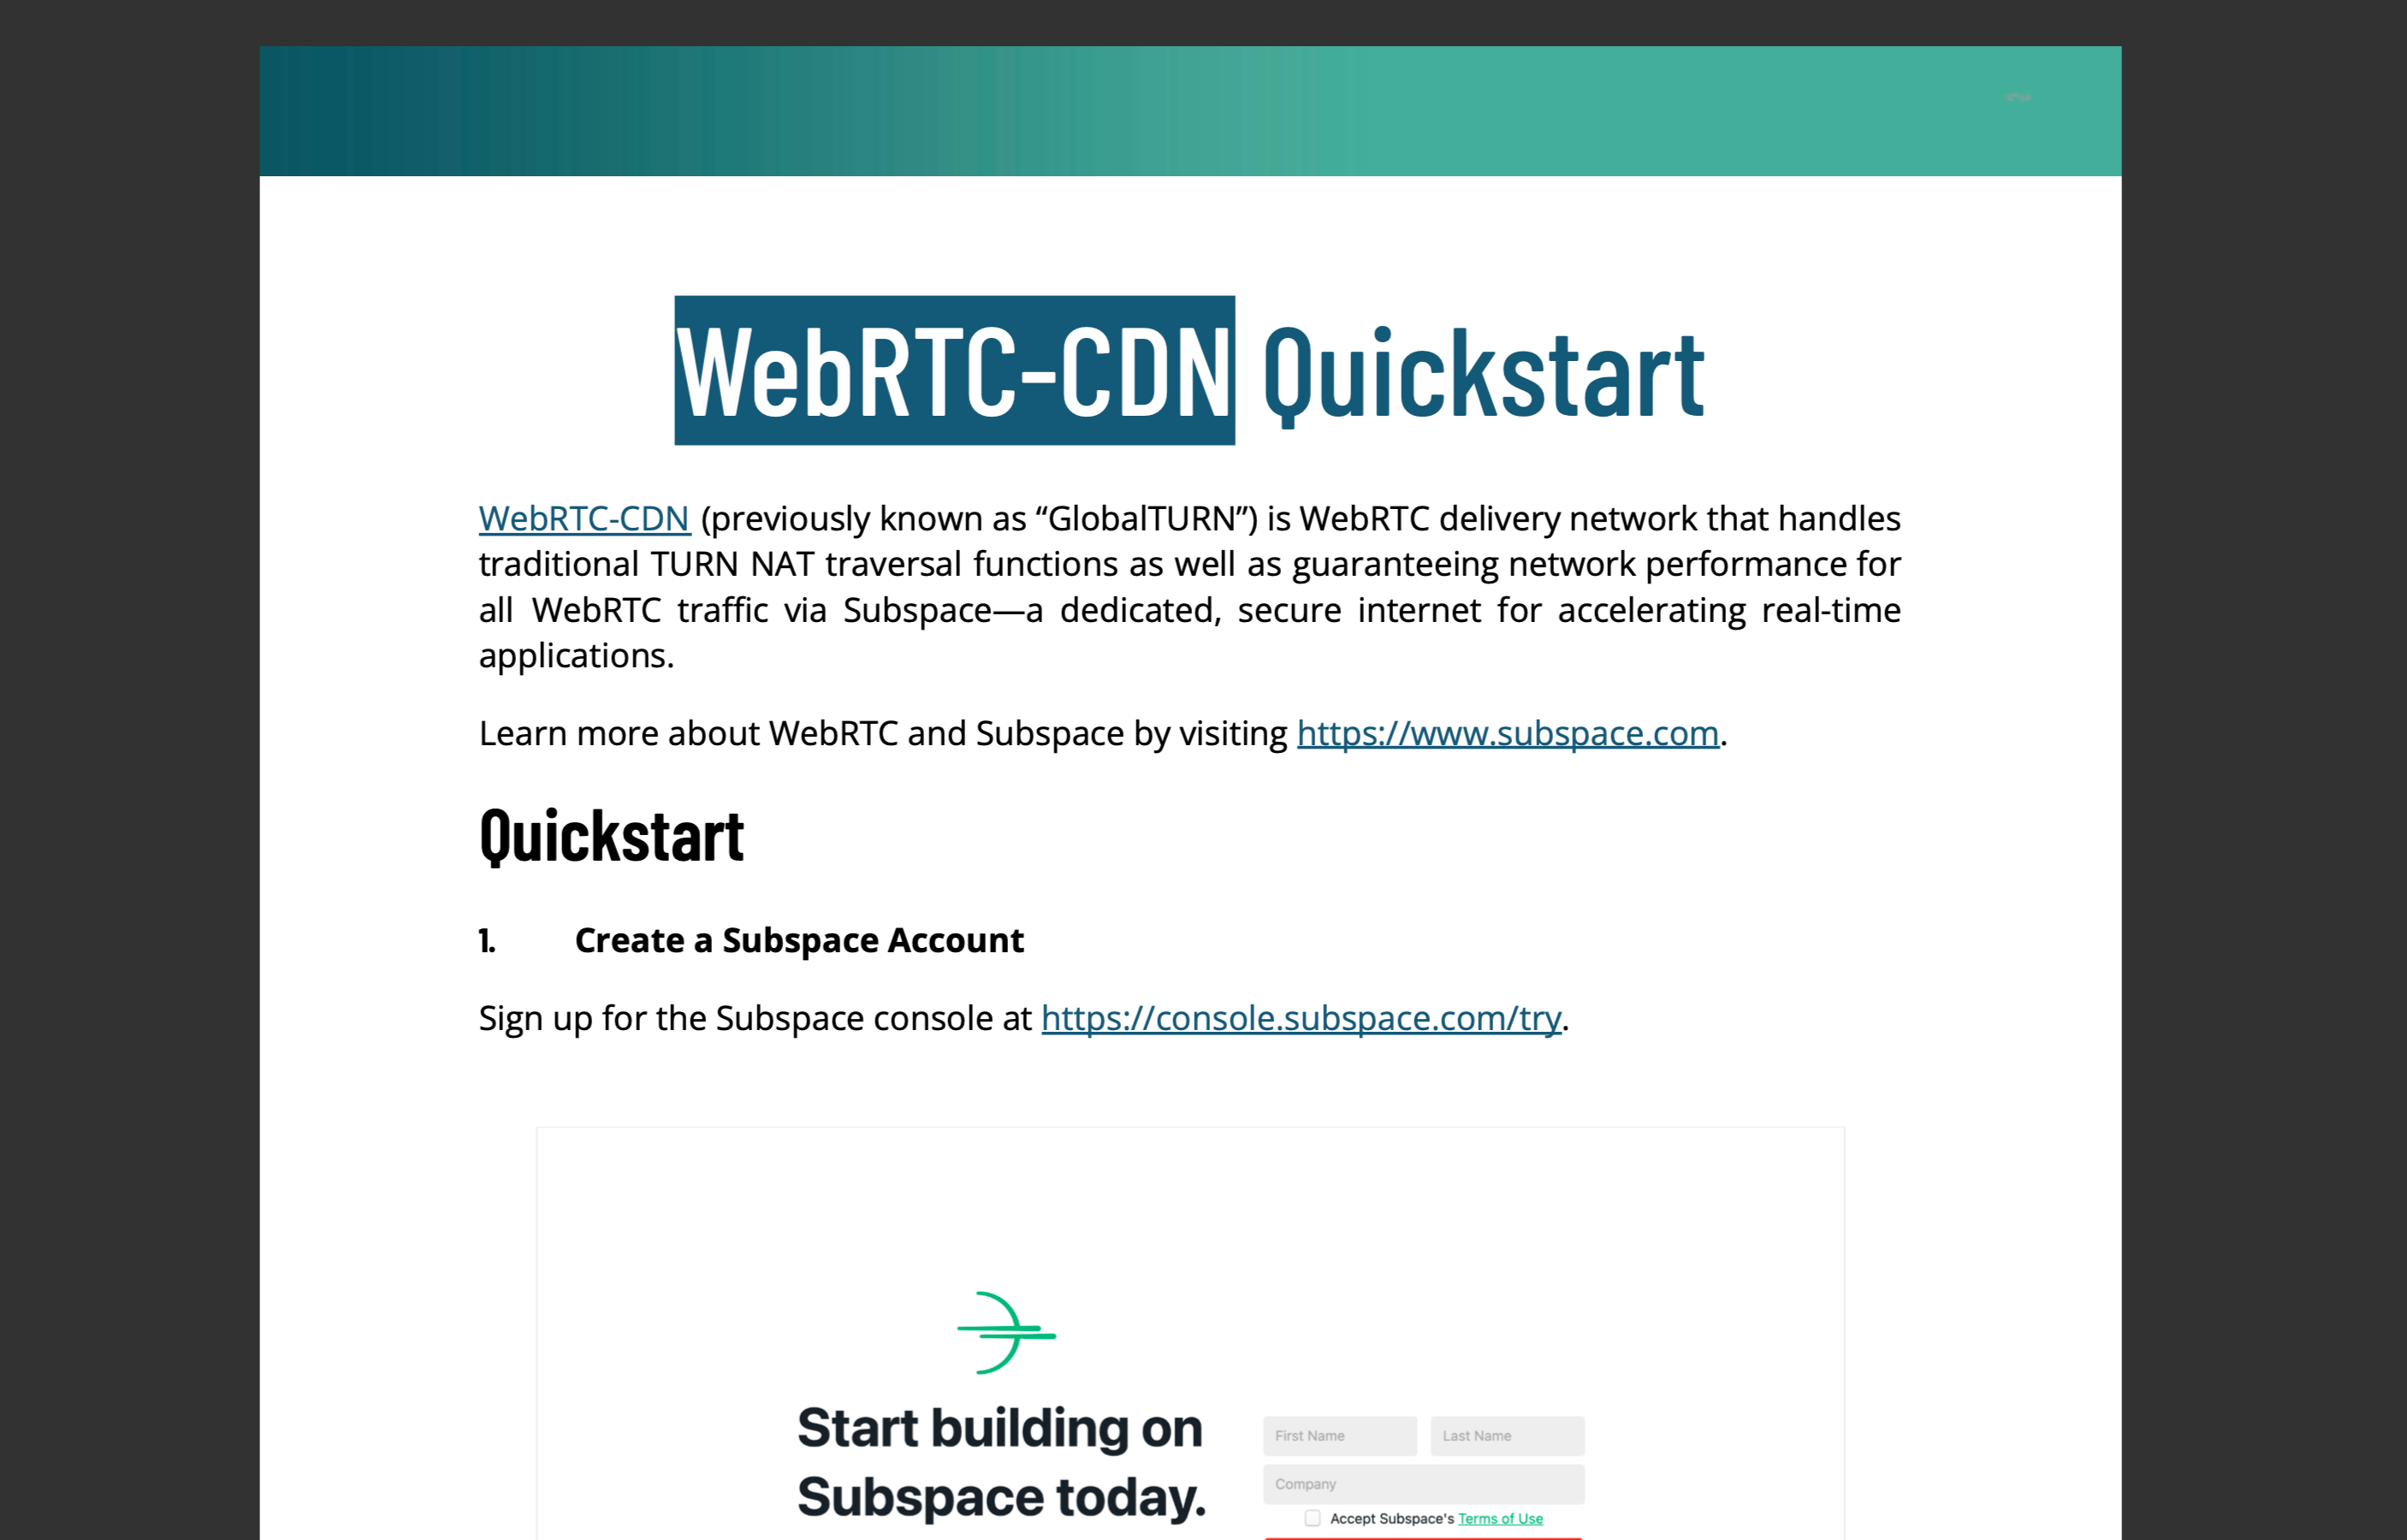 WebRTC-CDN Quickstart Guide